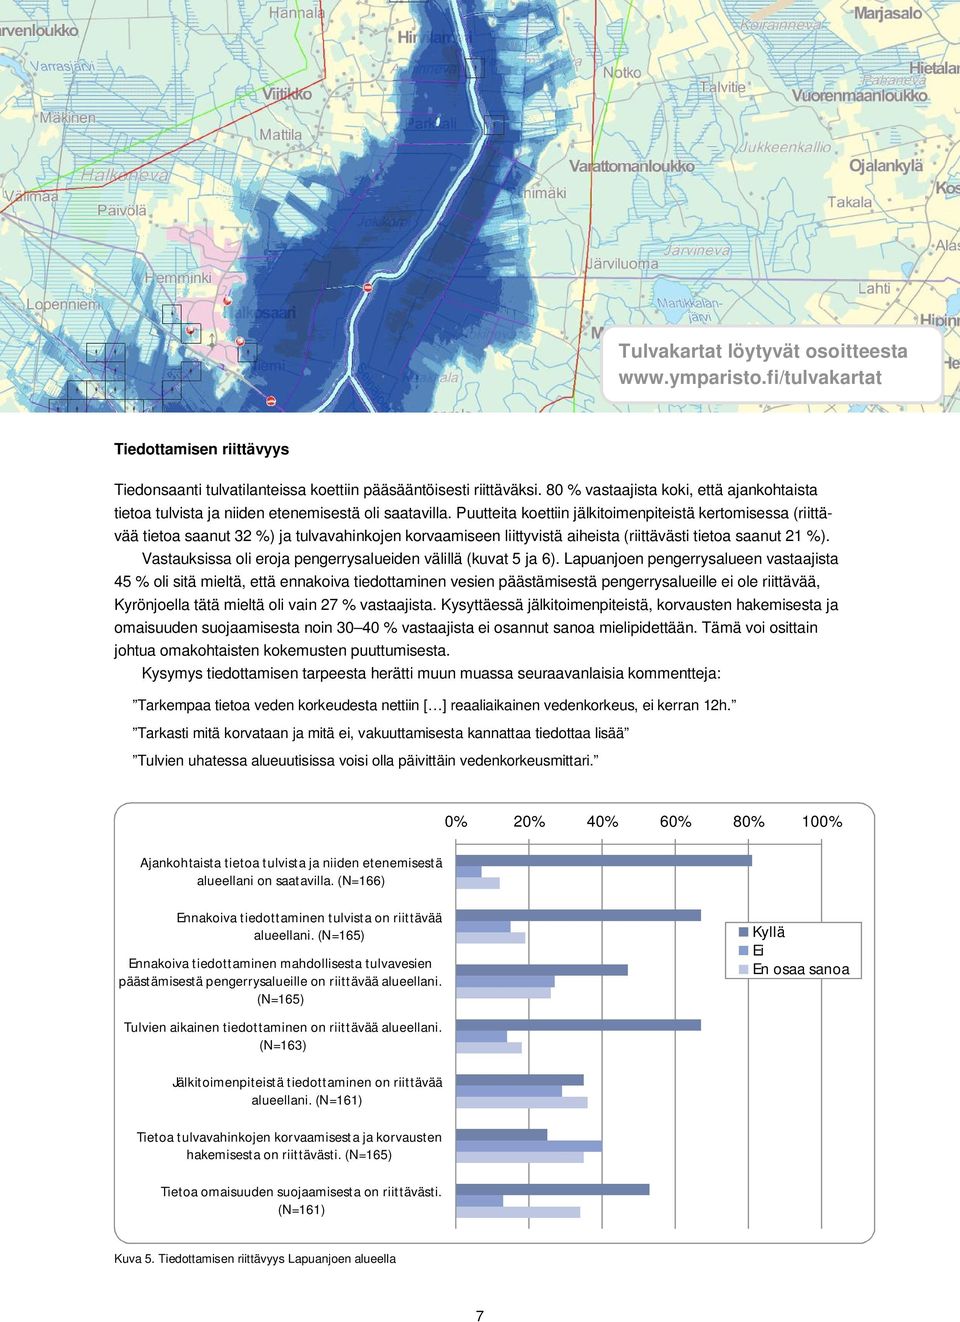 Puutteita koettiin jälkitoimenpiteistä kertomisessa (riittävää tietoa saanut 32 %) ja tulvavahinkojen korvaamiseen liittyvistä aiheista (riittävästi tietoa saanut 21 %).